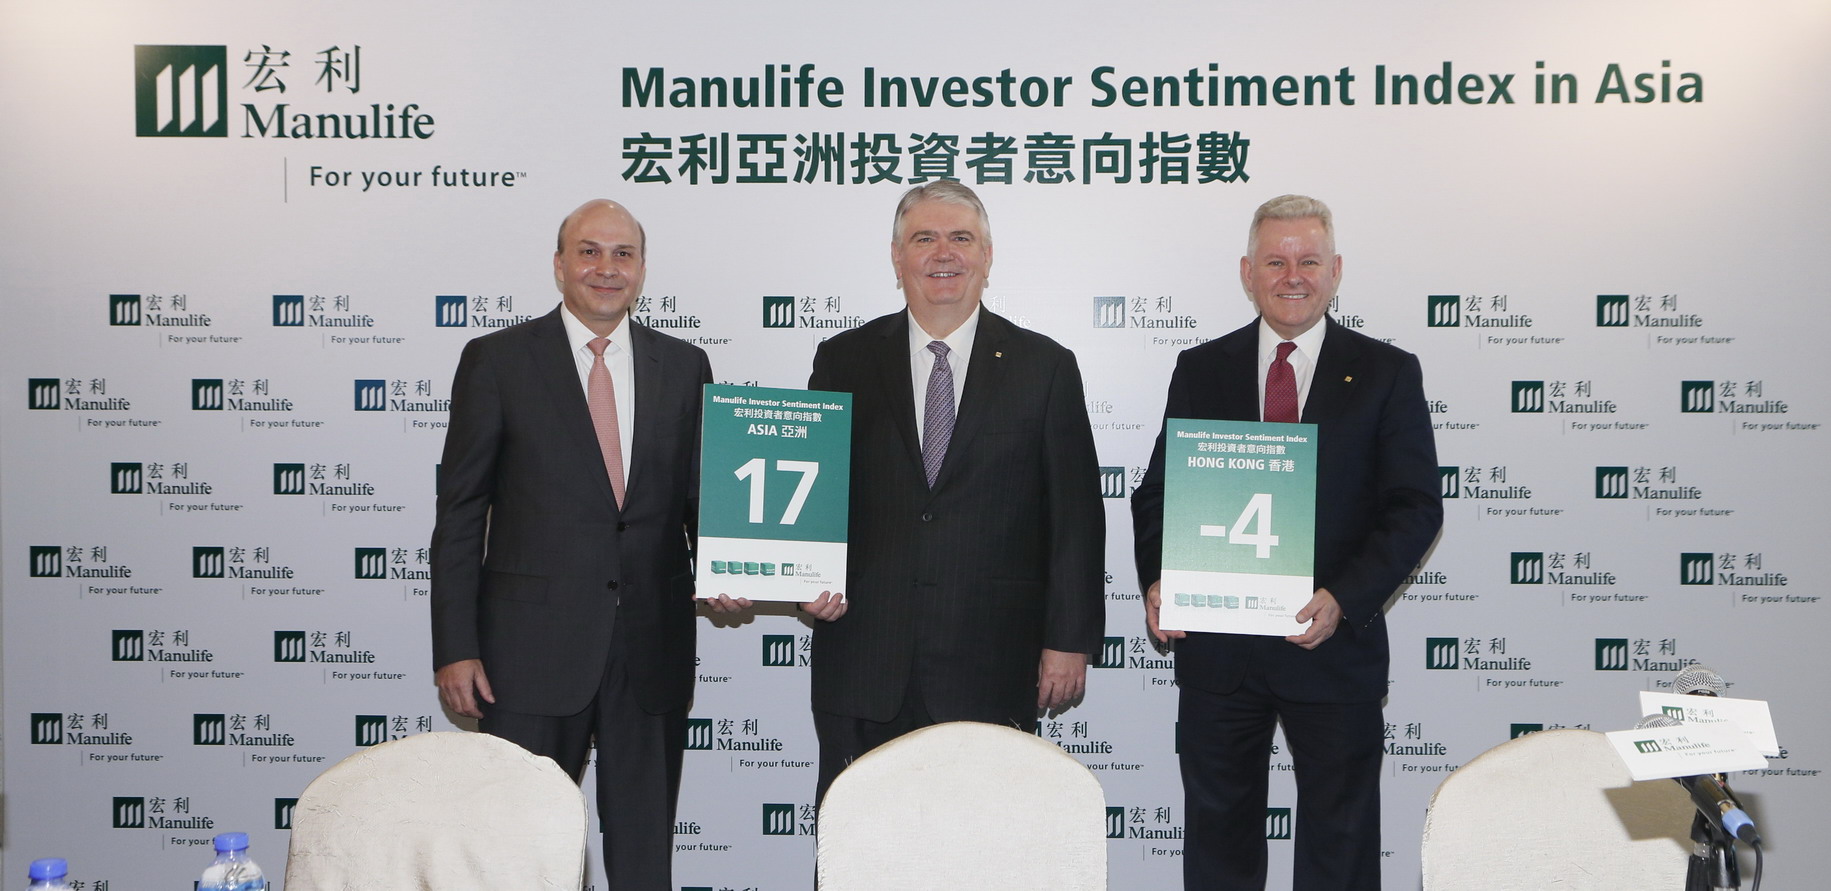 manulife leveraged investing